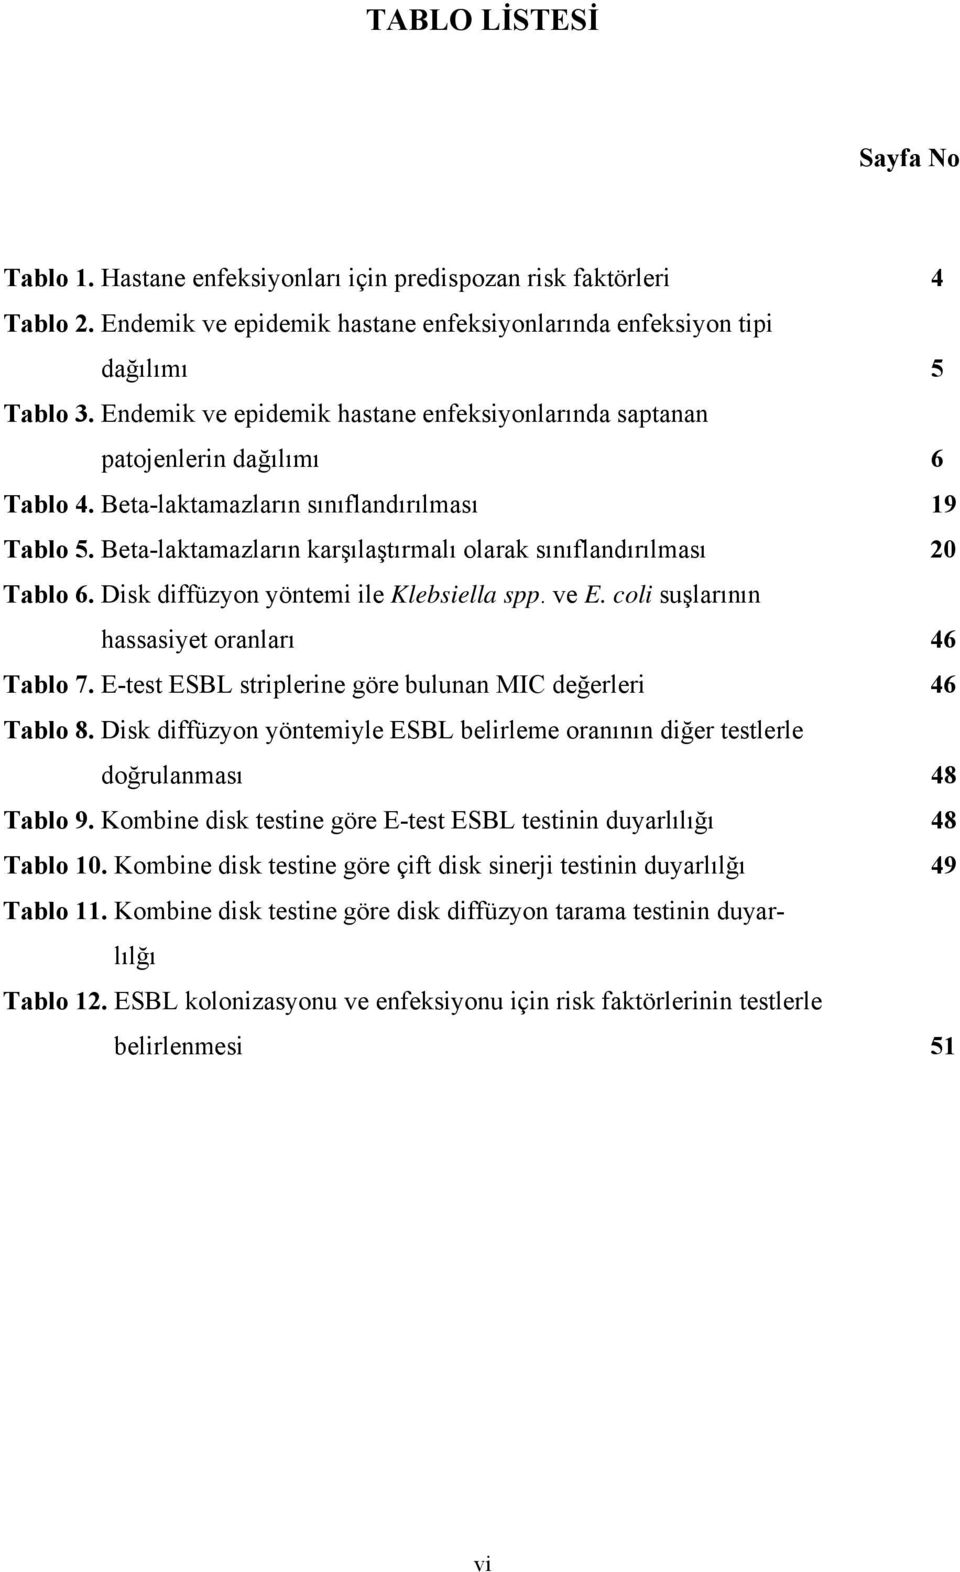 Beta-laktamazların karşılaştırmalı olarak sınıflandırılması 20 Tablo 6. Disk diffüzyon yöntemi ile Klebsiella spp. ve E. coli suşlarının hassasiyet oranları 46 Tablo 7.